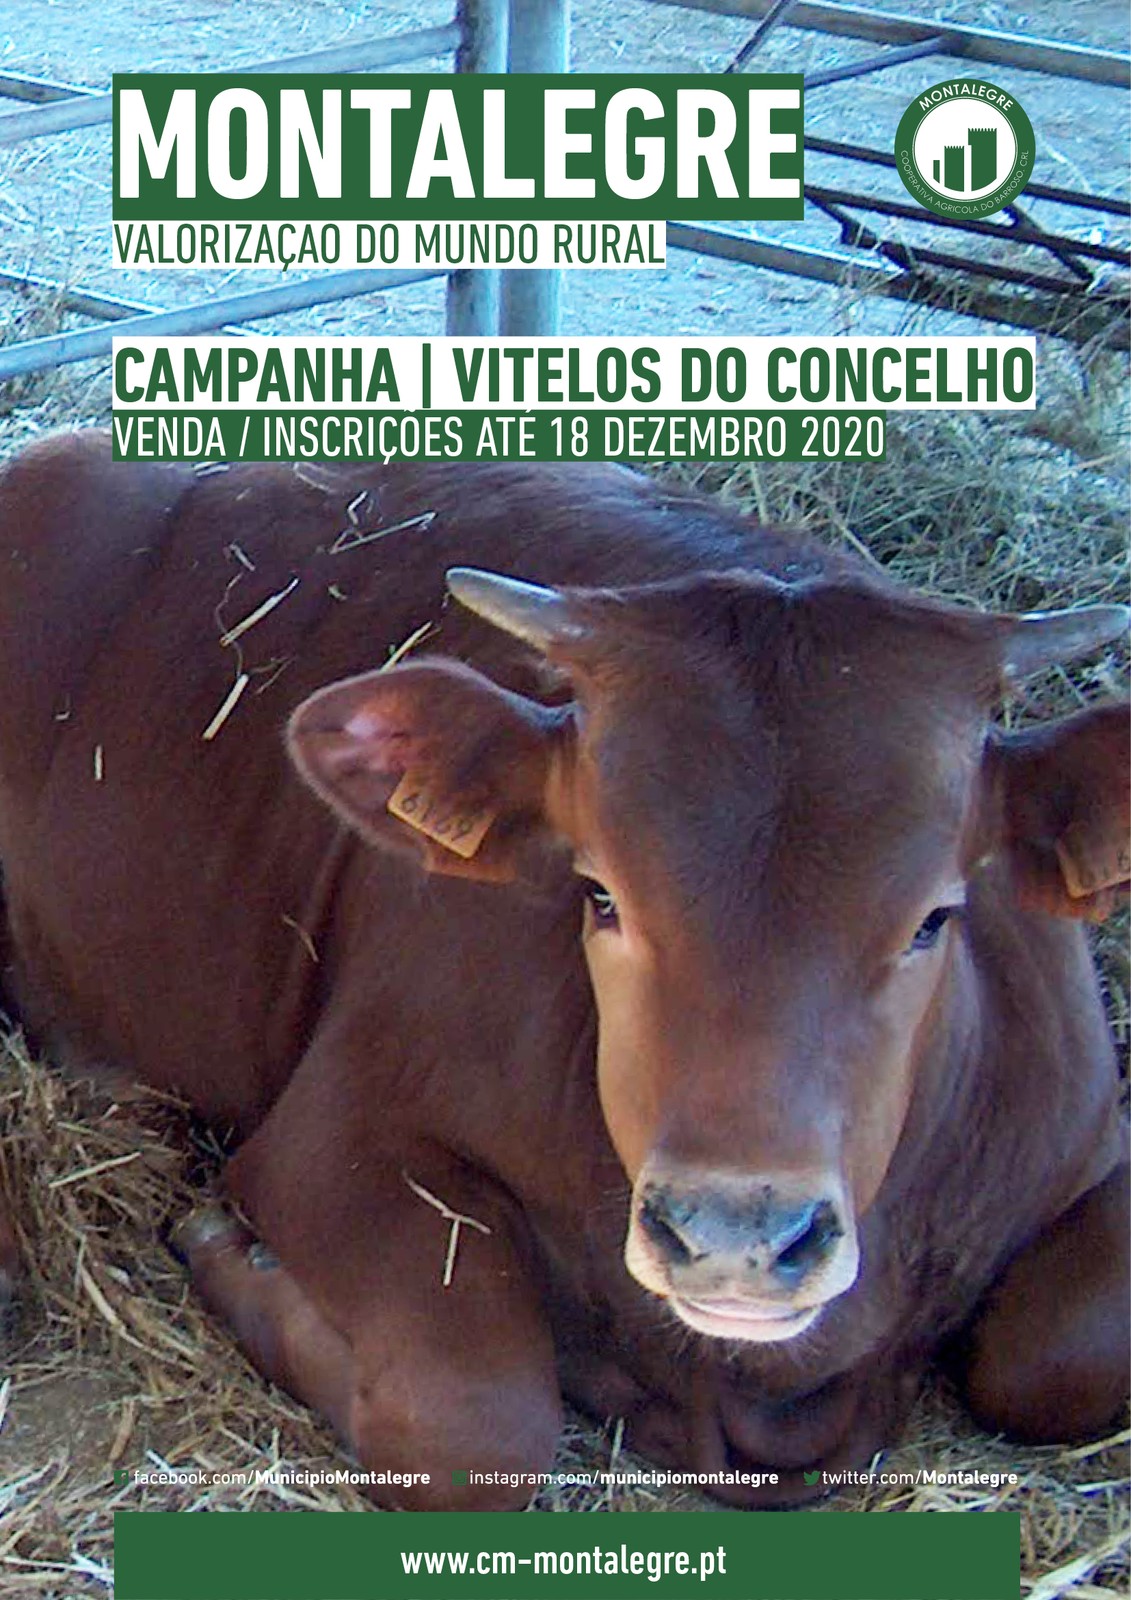 Montalegre   valorizacao do mundo rural   venda de vitelos do concelho  2020 